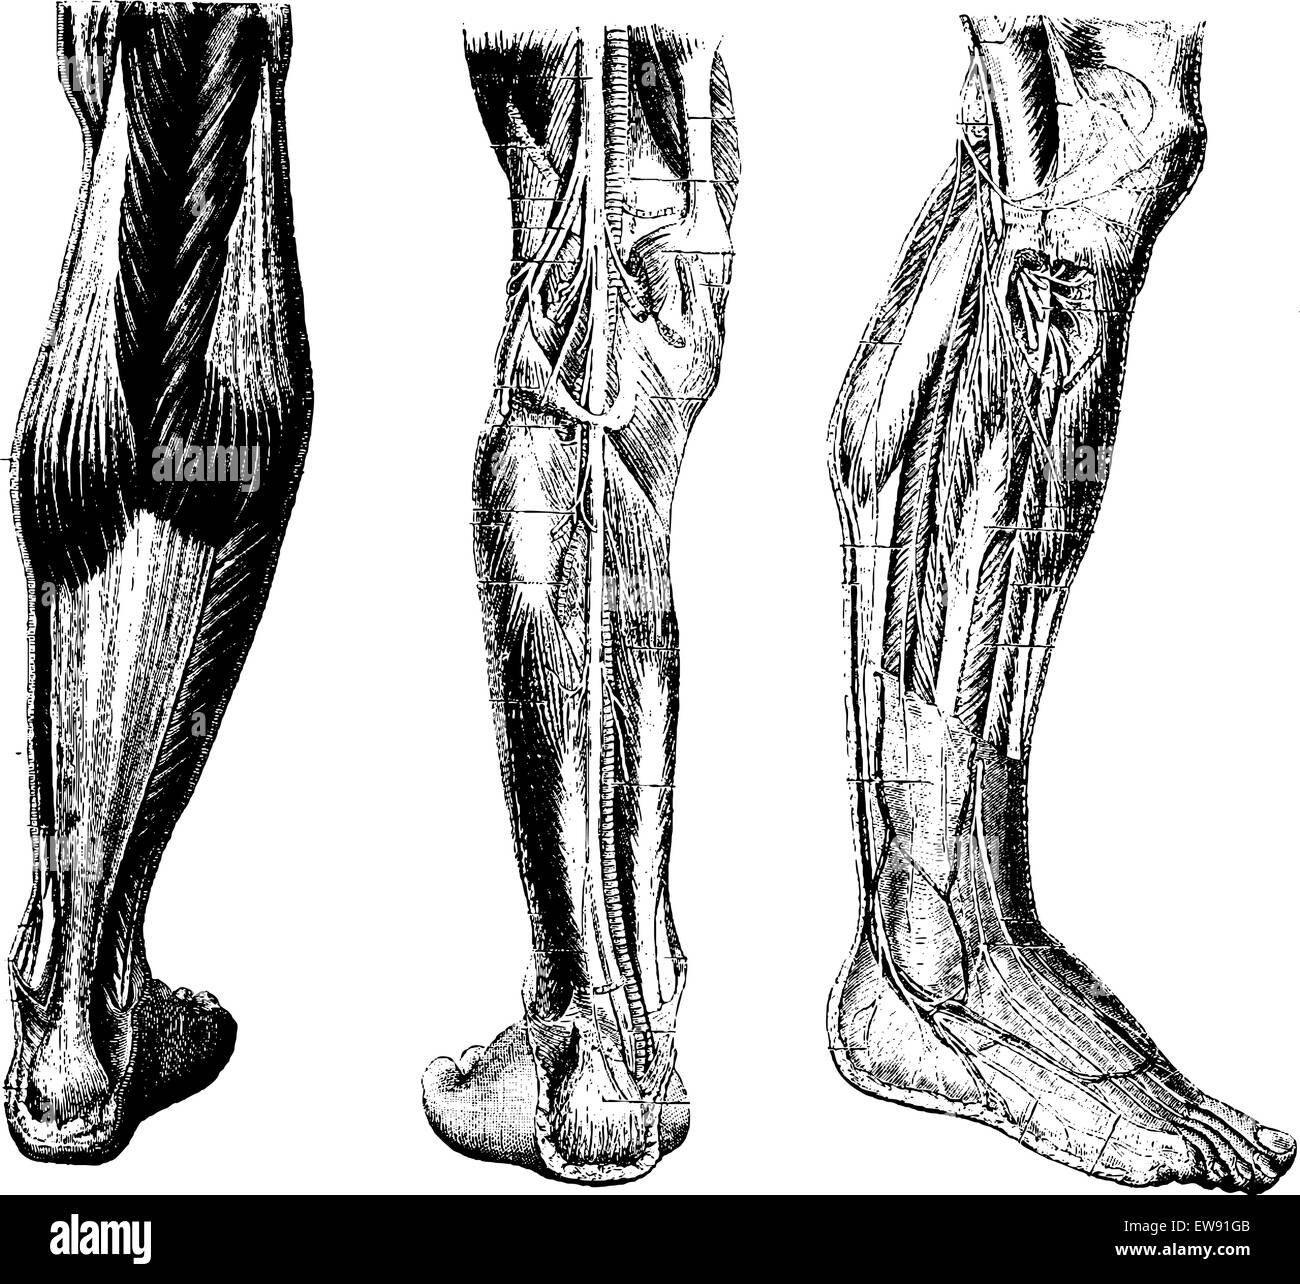 Gamba umana, che mostra la superficie posteriore (sinistra), profondo regione posteriore (centro) e profonda regione anteriore (destra), vintage ho inciso Illustrazione Vettoriale